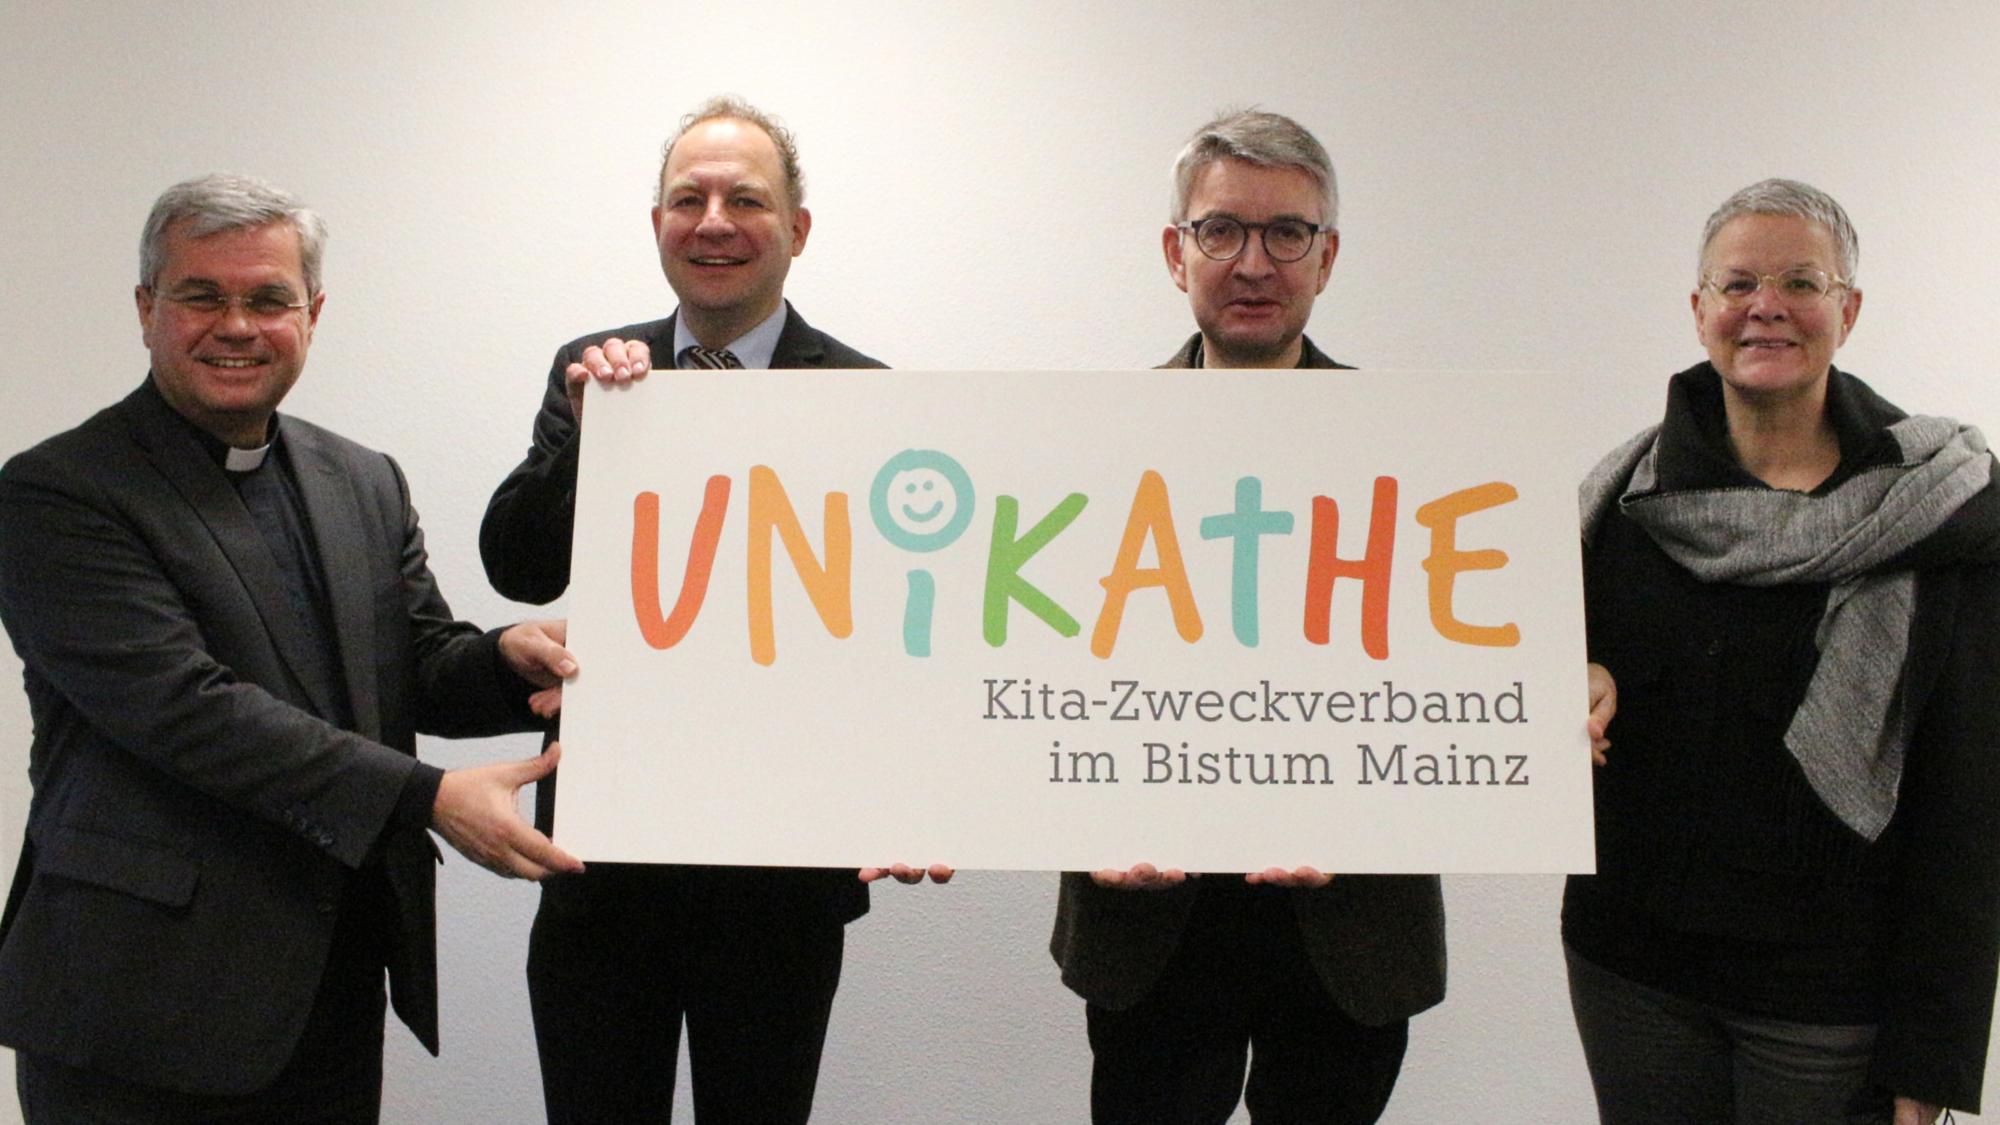 Mainz, 30. November 2021: Am 1. Juli 2022 geht der neue Kita-Zweckverband 